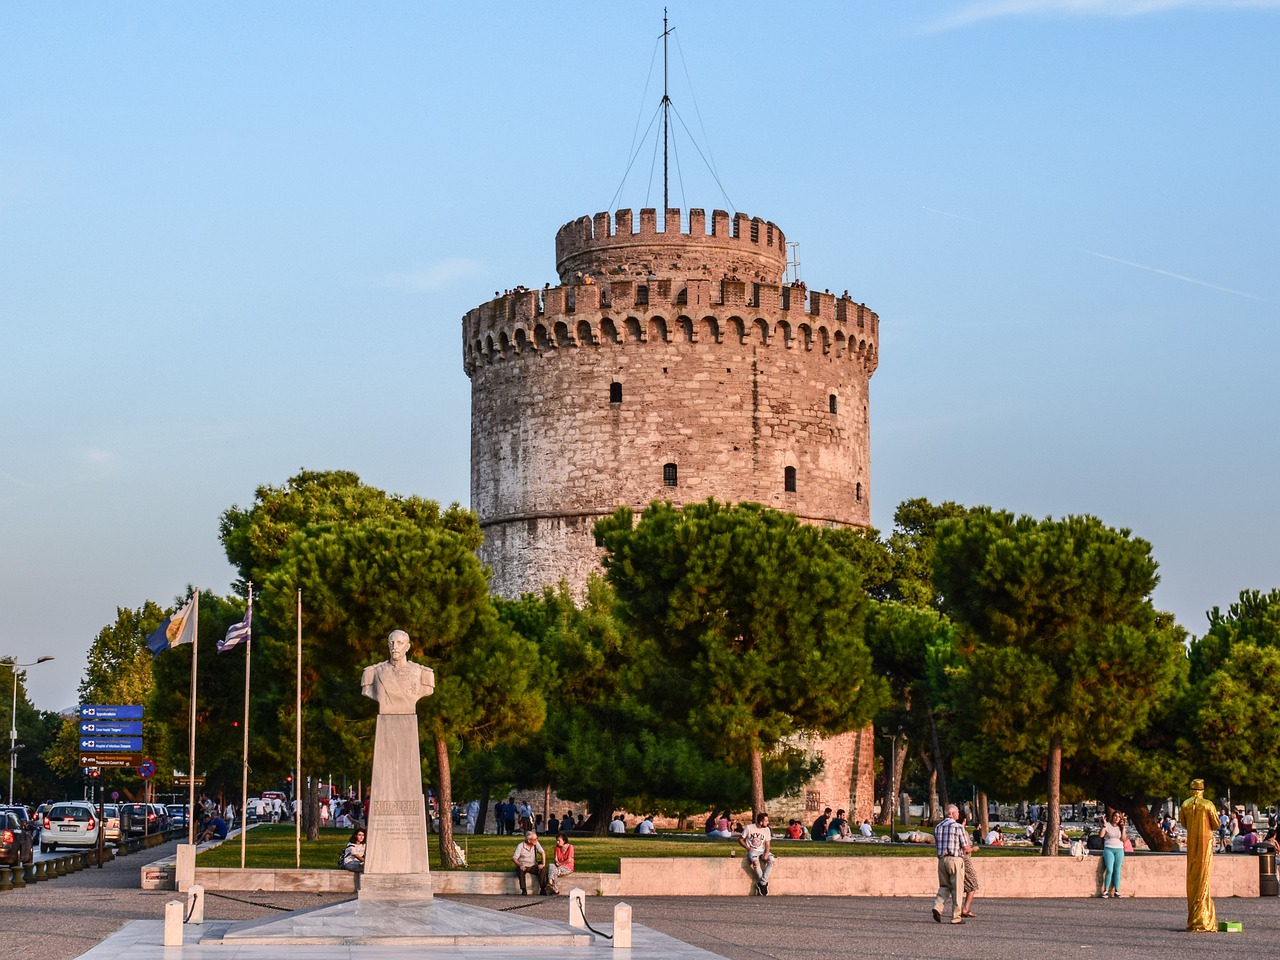 Έπιασαν δουλειά οι ξεναγοί της Θεσσαλονίκης για τη φετινή σεζόν – Το προφίλ των επισκεπτών που κλείνουν ξεναγήσεις